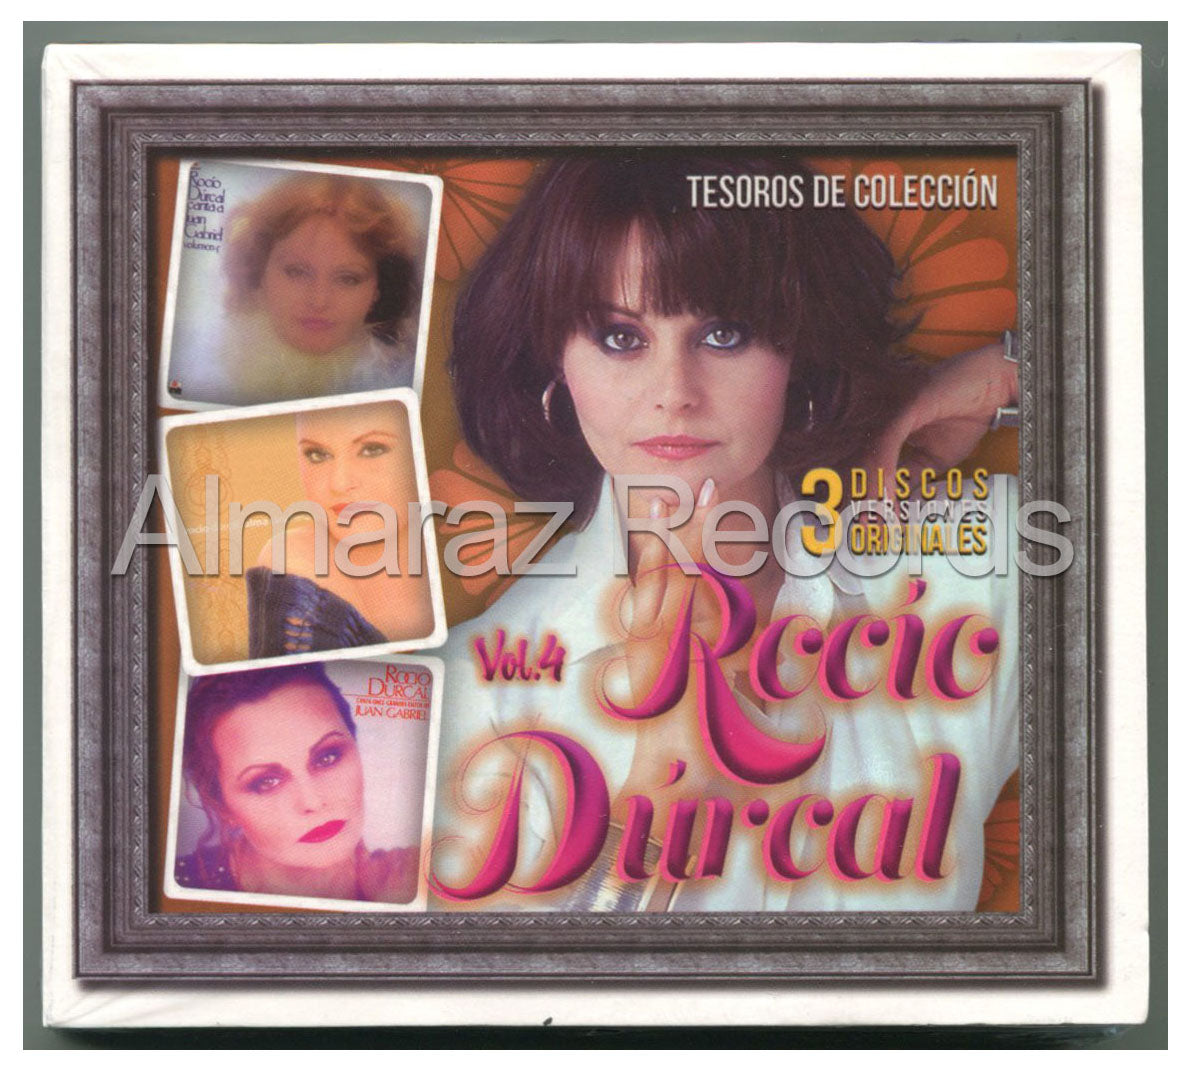 Rocio Durcal Tesoros De Coleccion Vol. 4 3CD